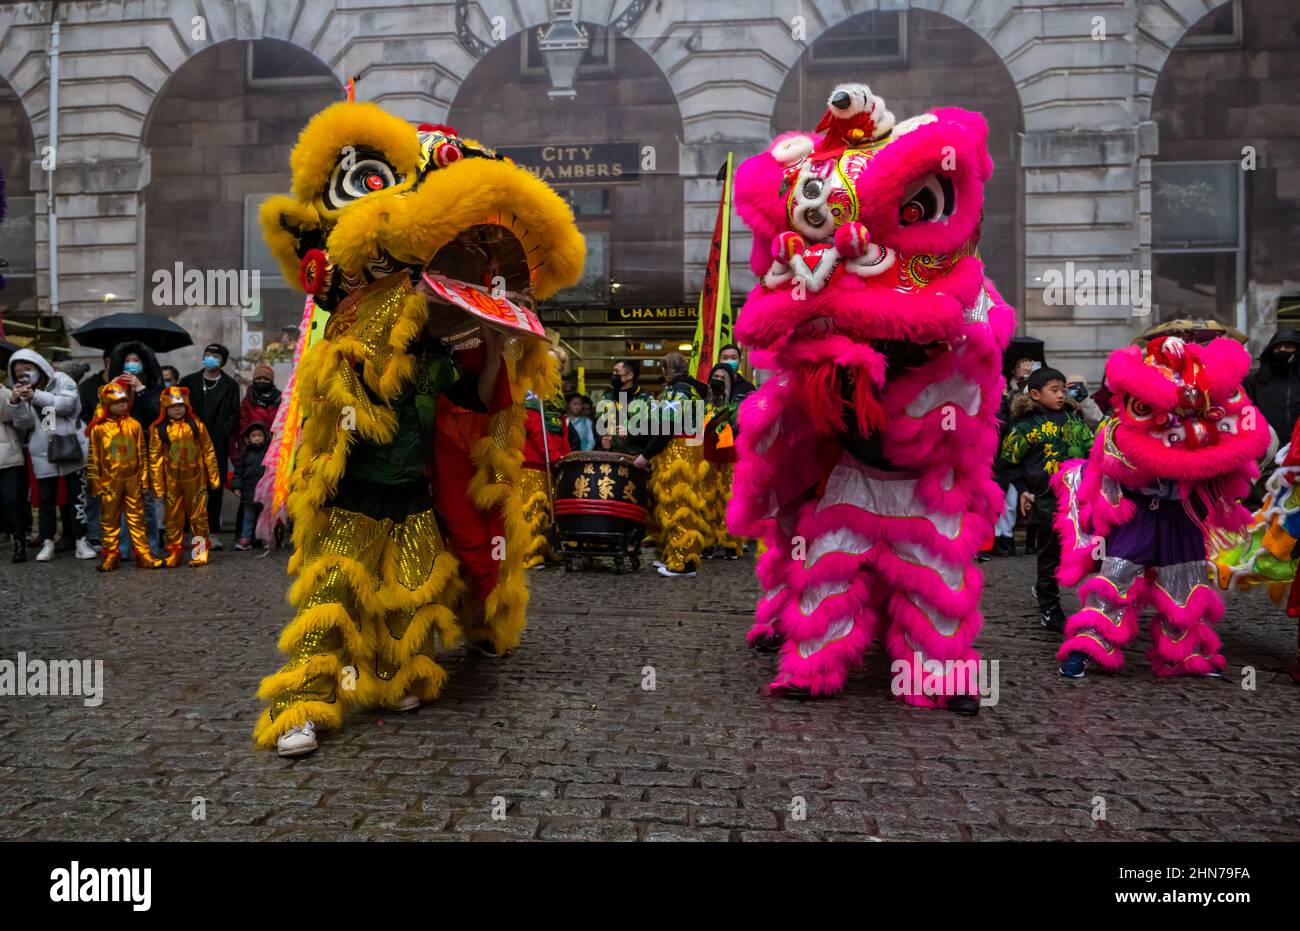 Chinesische Neujahrsfeier mit Künstlern in bunten Kostümen, City Chambers, Edinburgh, Schottland, Großbritannien Stockfoto